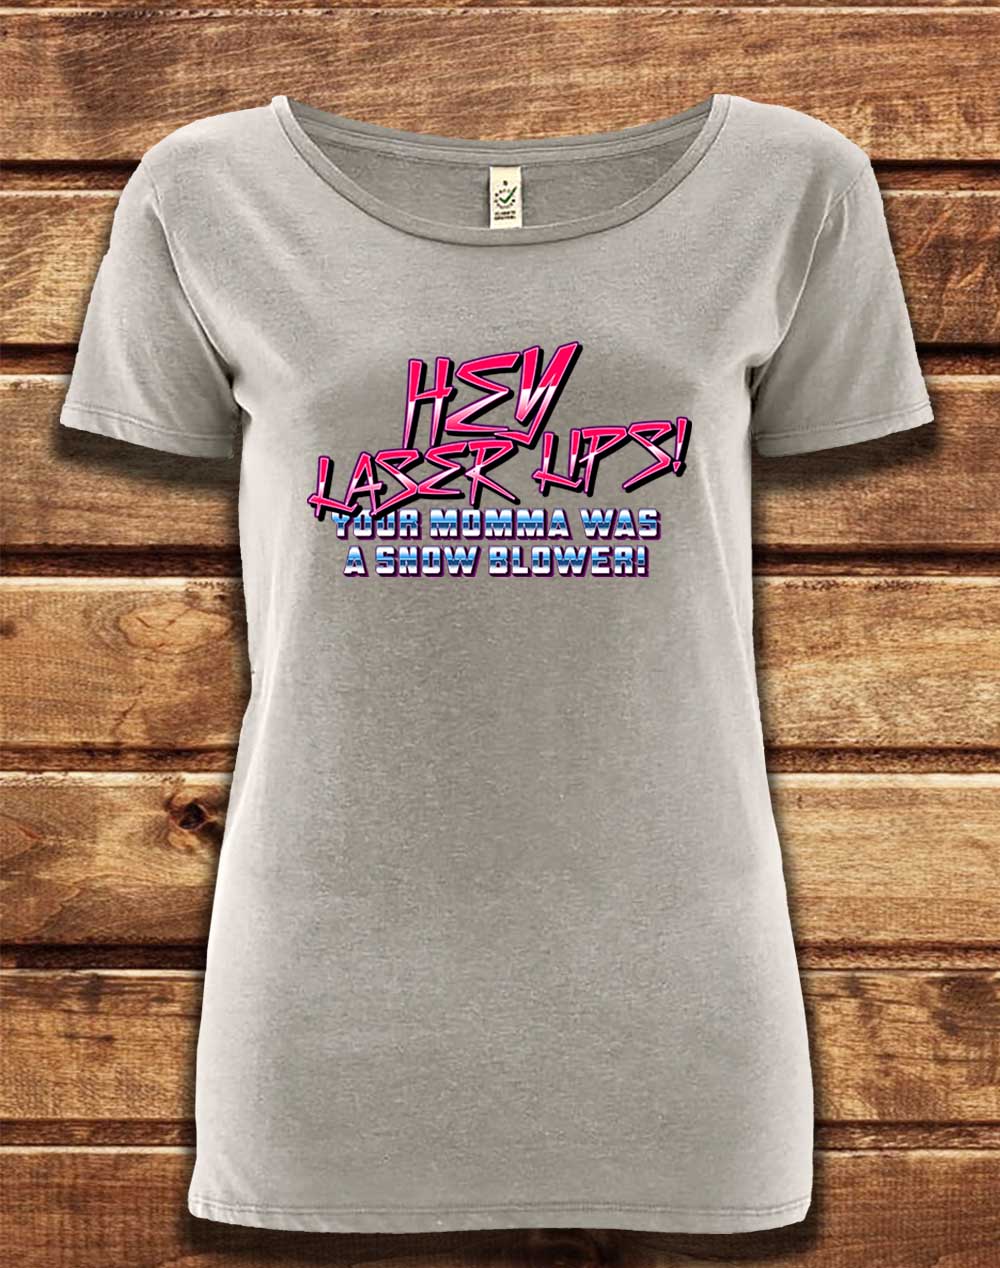 Melange Grey - DELUXE Hey Laser Lips Organic Scoop Neck T-Shirt